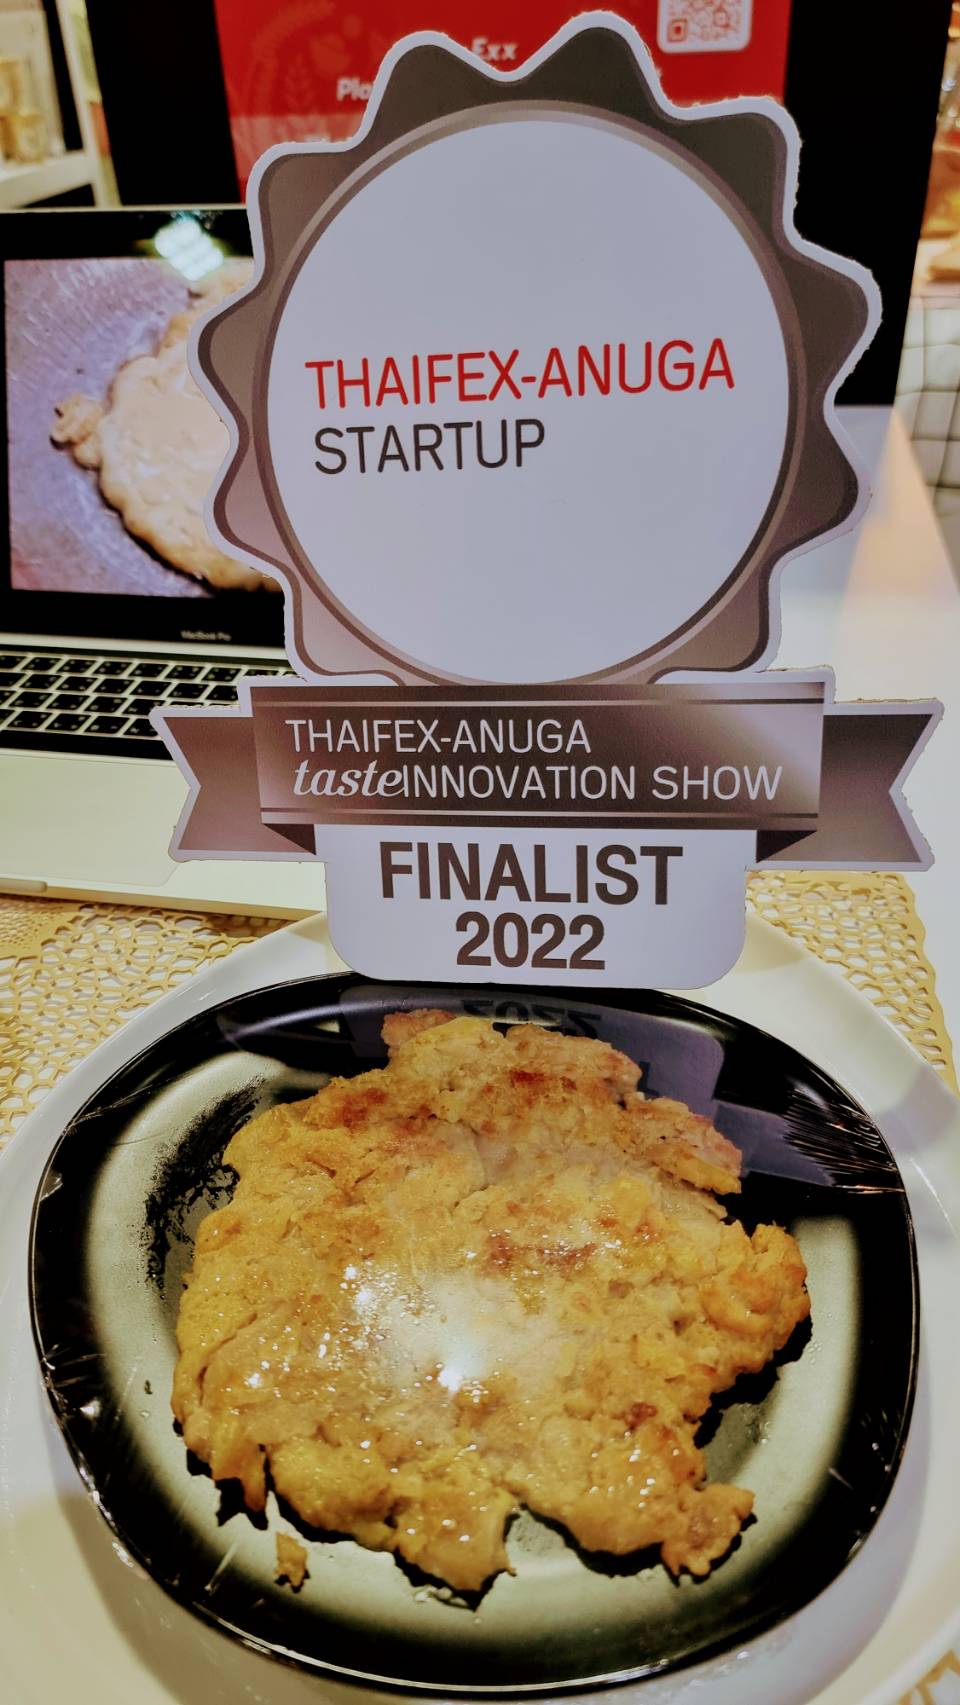 ผลงานวิจัย ร่วมภาคเอกชน แสร้งว่าไข่เจียว (Plant based egg) เข้ารอบสุดท้ายการประกวดผลิตภัณฑ์อาหารนวัตกรรมประจำปี 2022 (THAIFEX ANUGA taste INNOVATION SHOW) ในกลุ่ม Startup ณ อิมแพคเมืองทองธานี